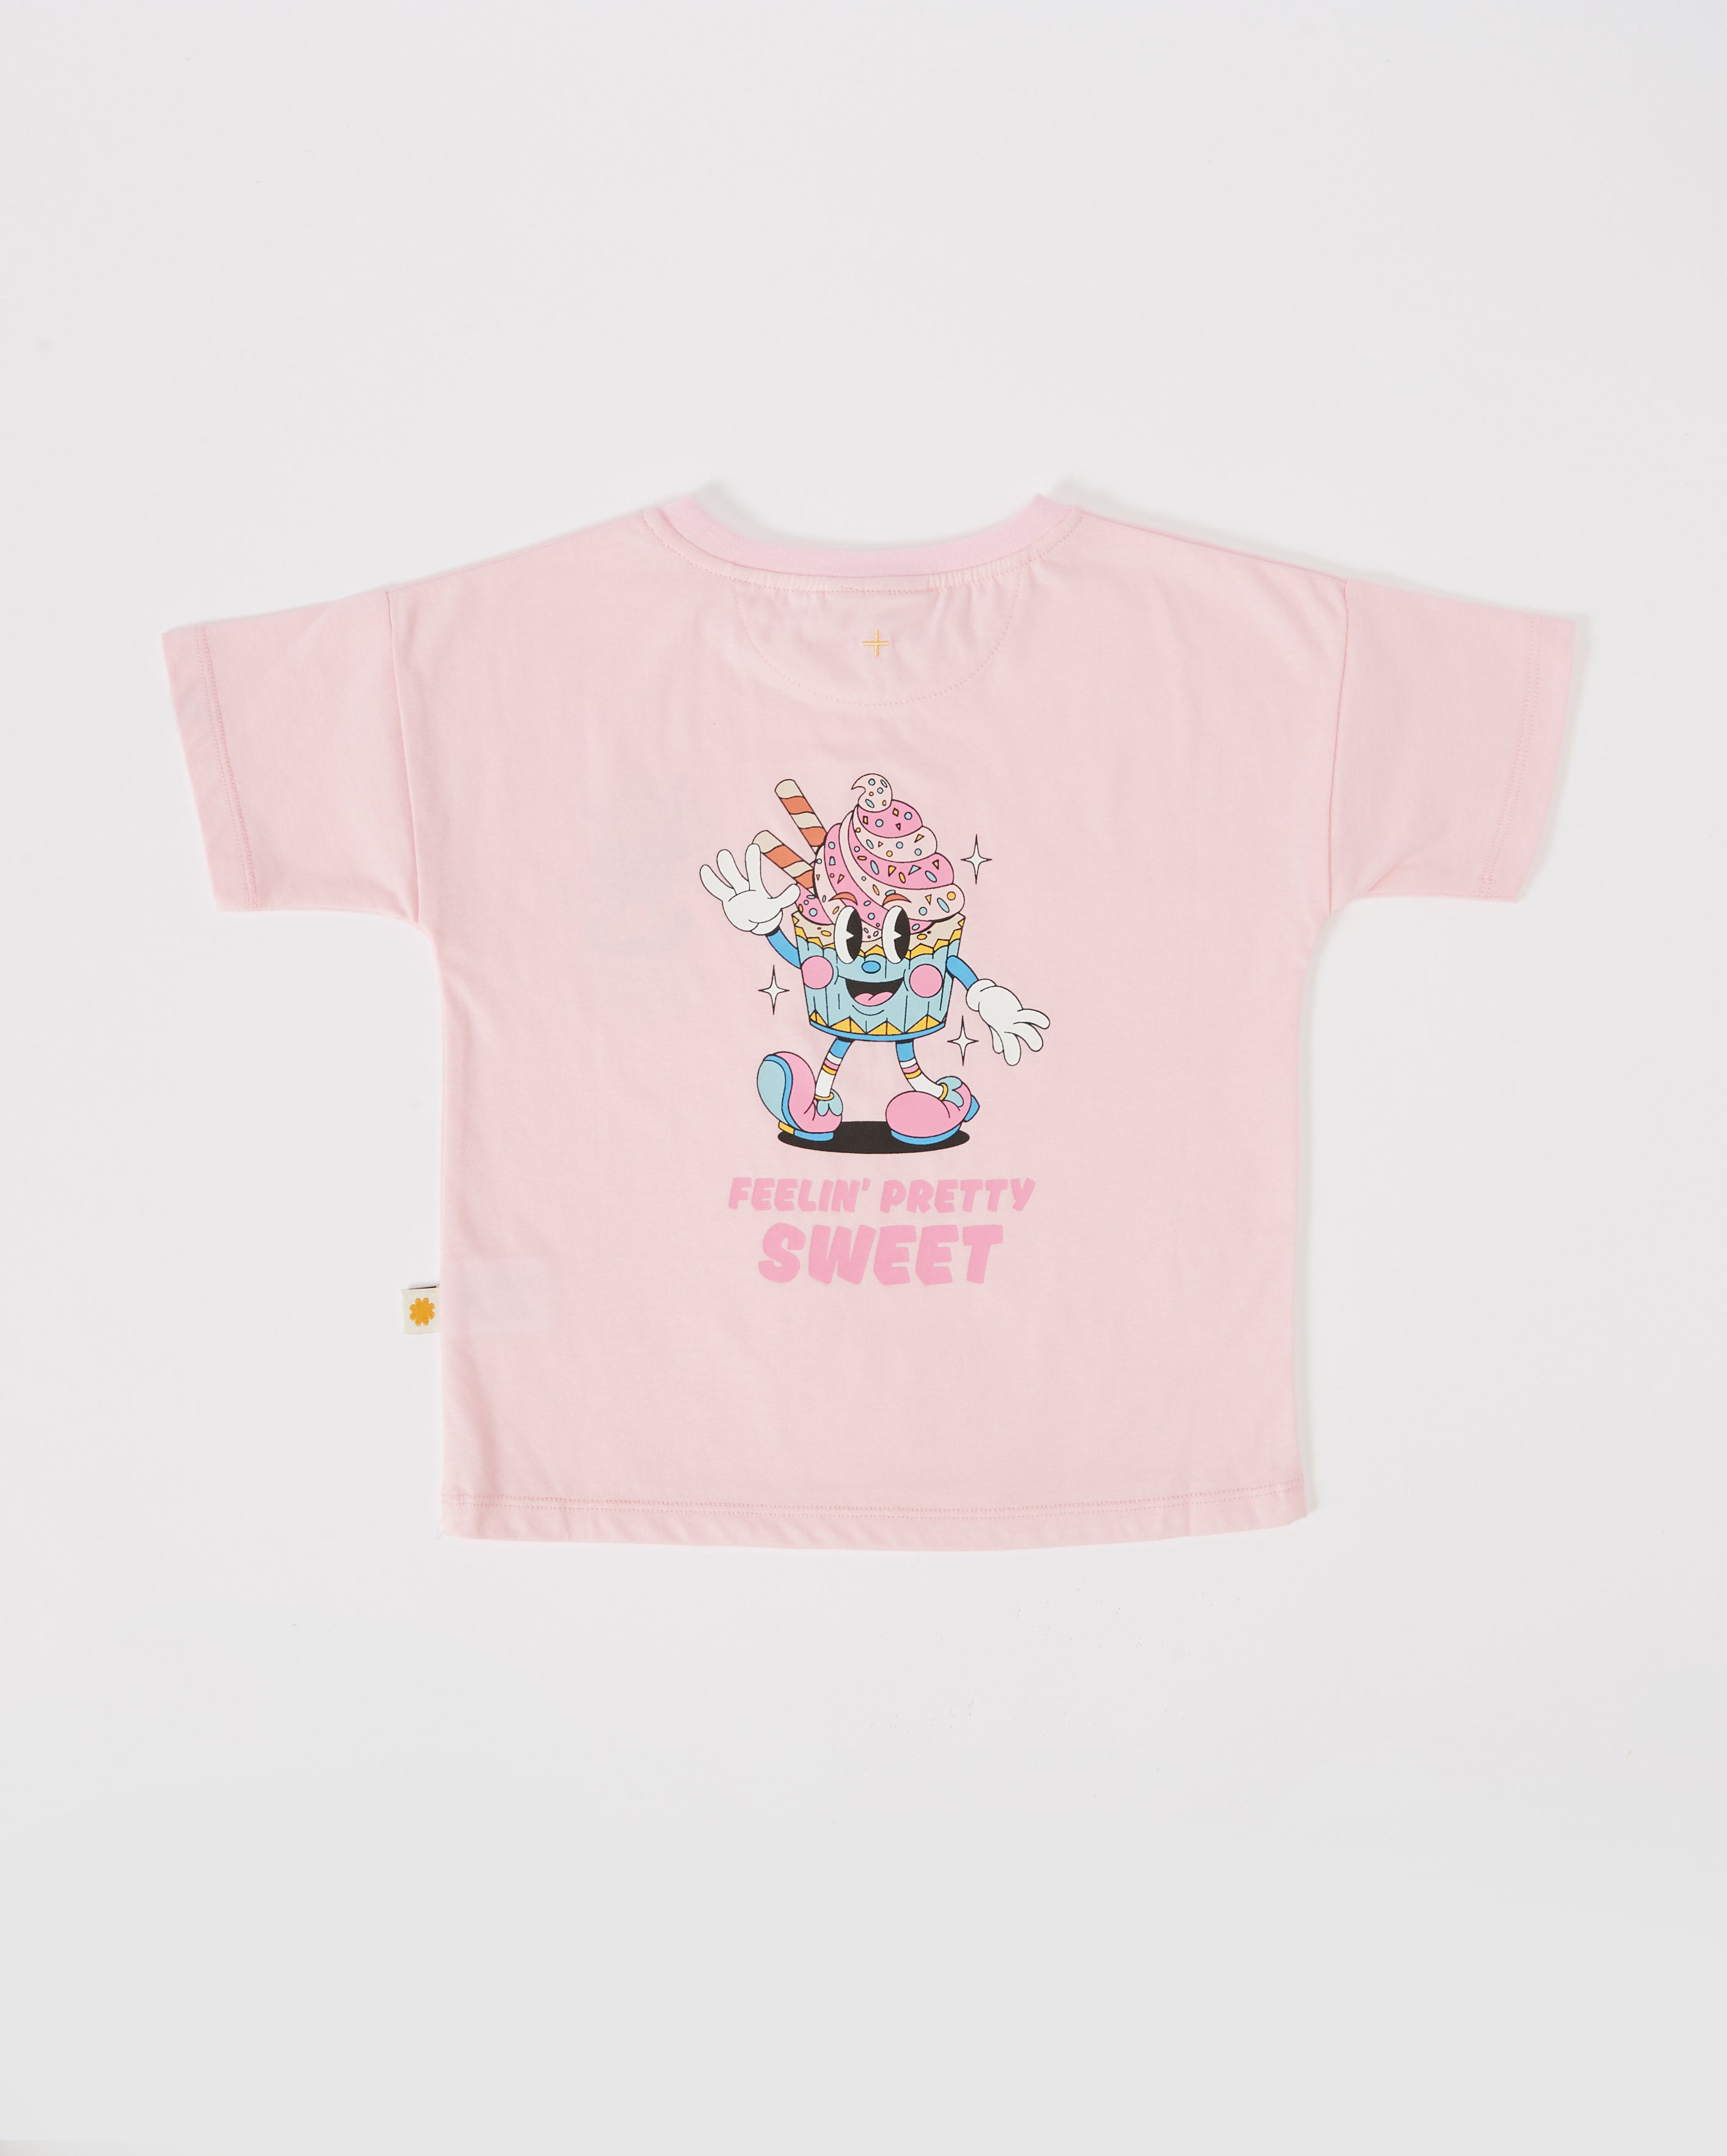 Goldie + Ace - Feelin' Pretty Sweet T-shirt